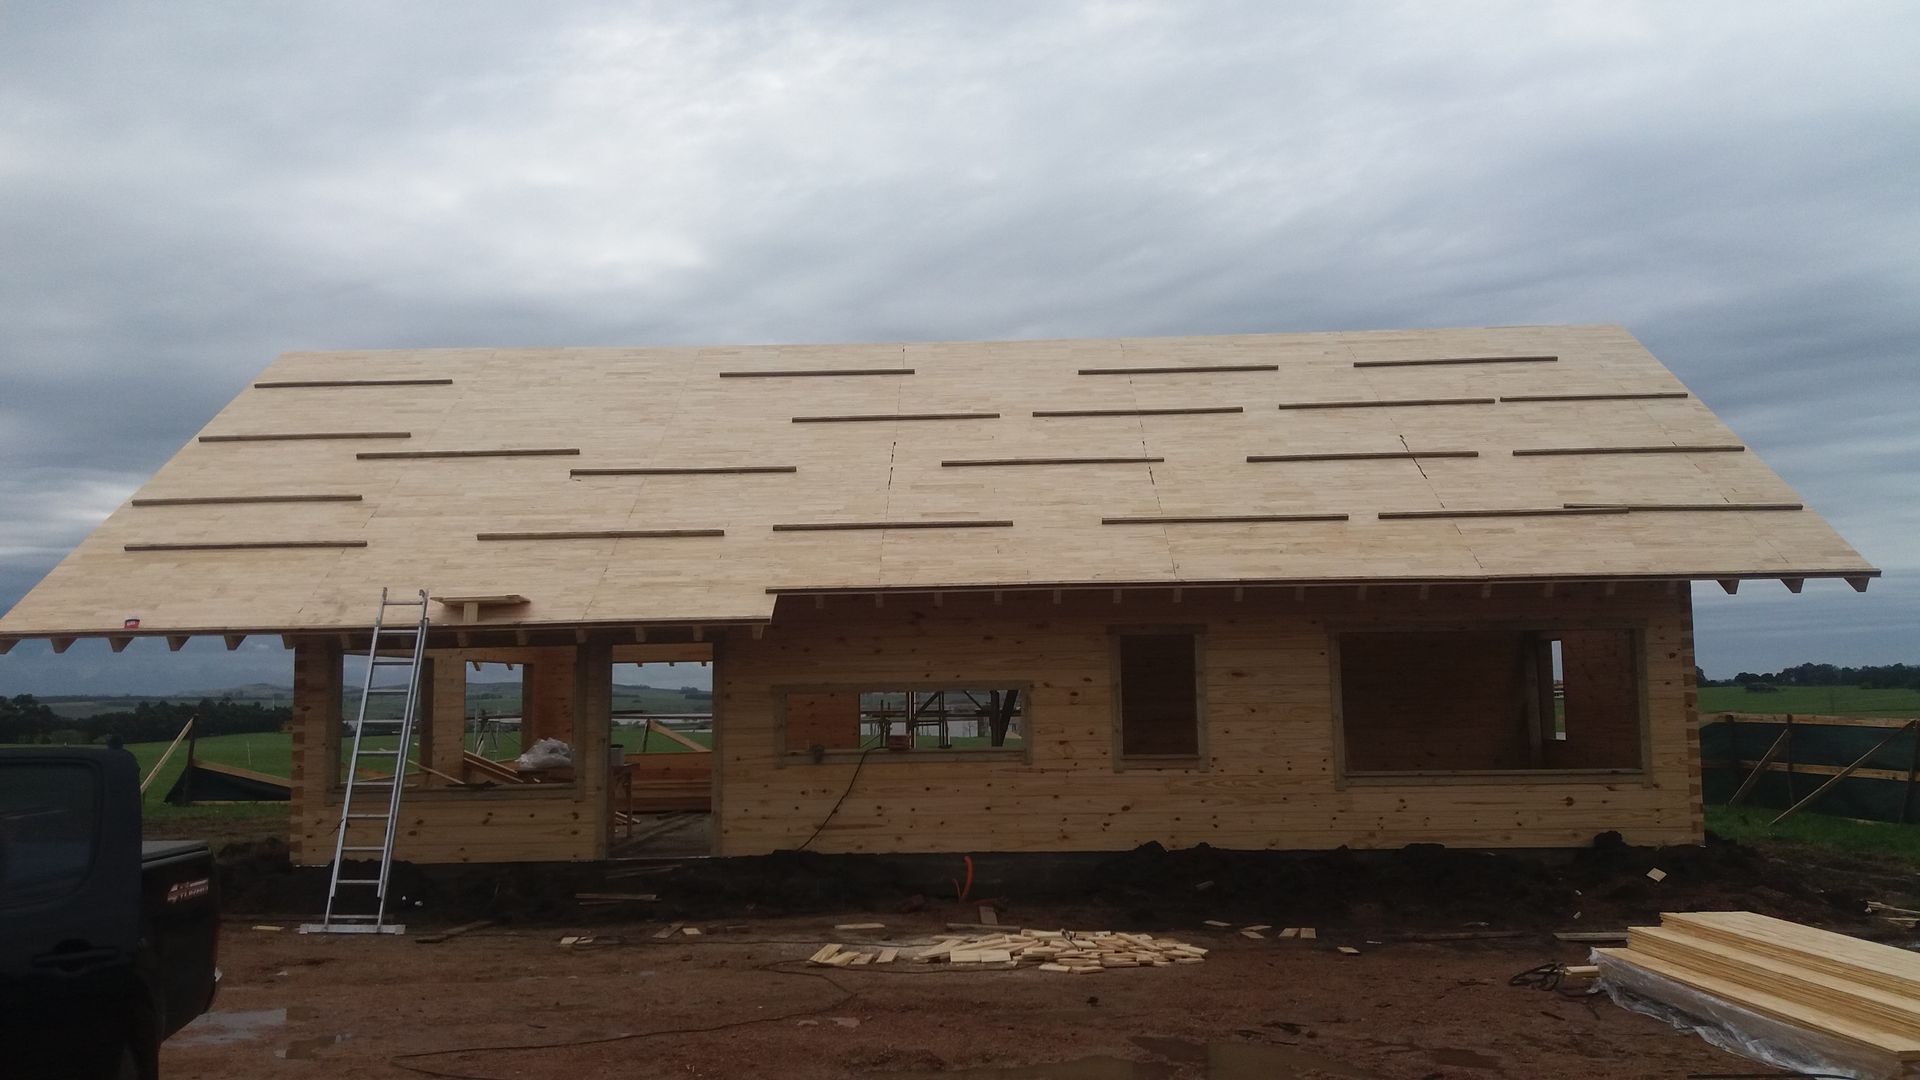 Casa en Uruguay (Construcción en 15 días) Superficie cubierta de 130 m2, Patagonia Log Homes - Arquitectos - Neuquén Patagonia Log Homes - Arquitectos - Neuquén Casas de madera Derivados de madera Transparente